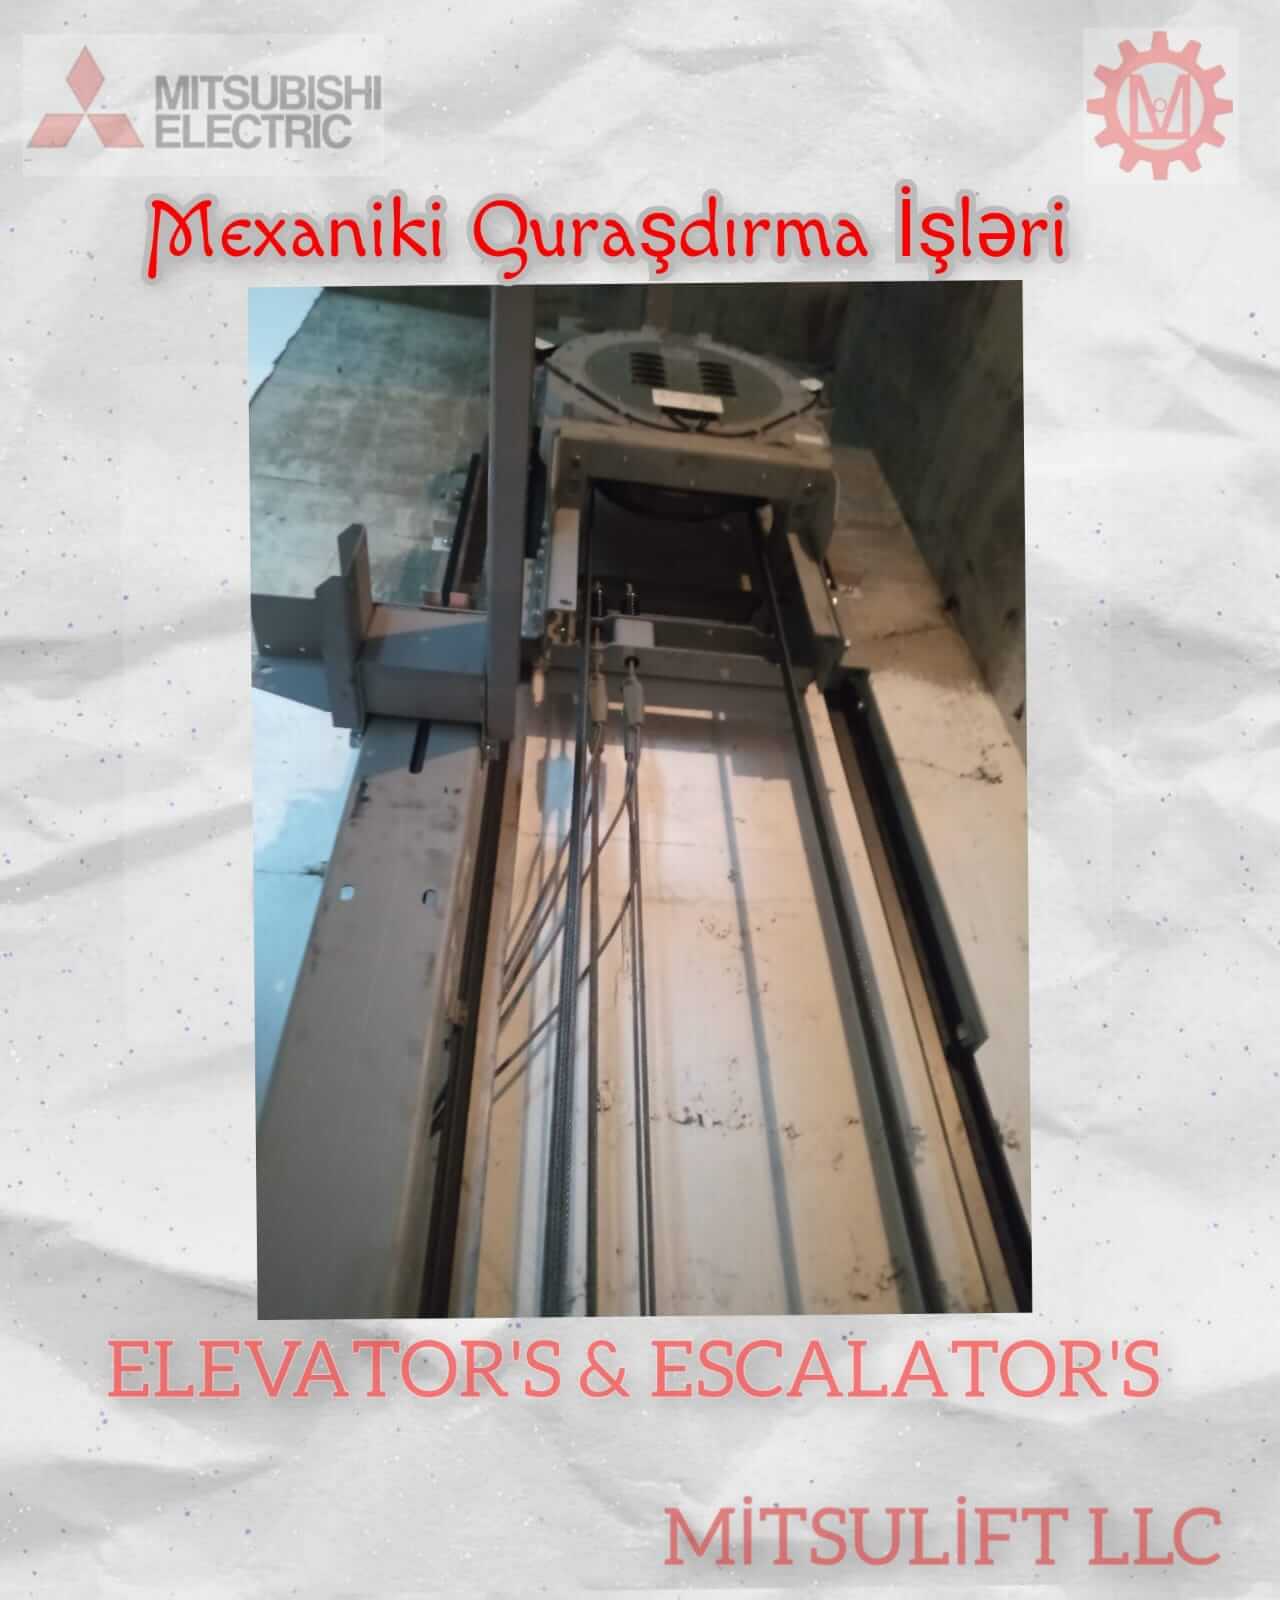 hyundai-lift-qurasdirma-5